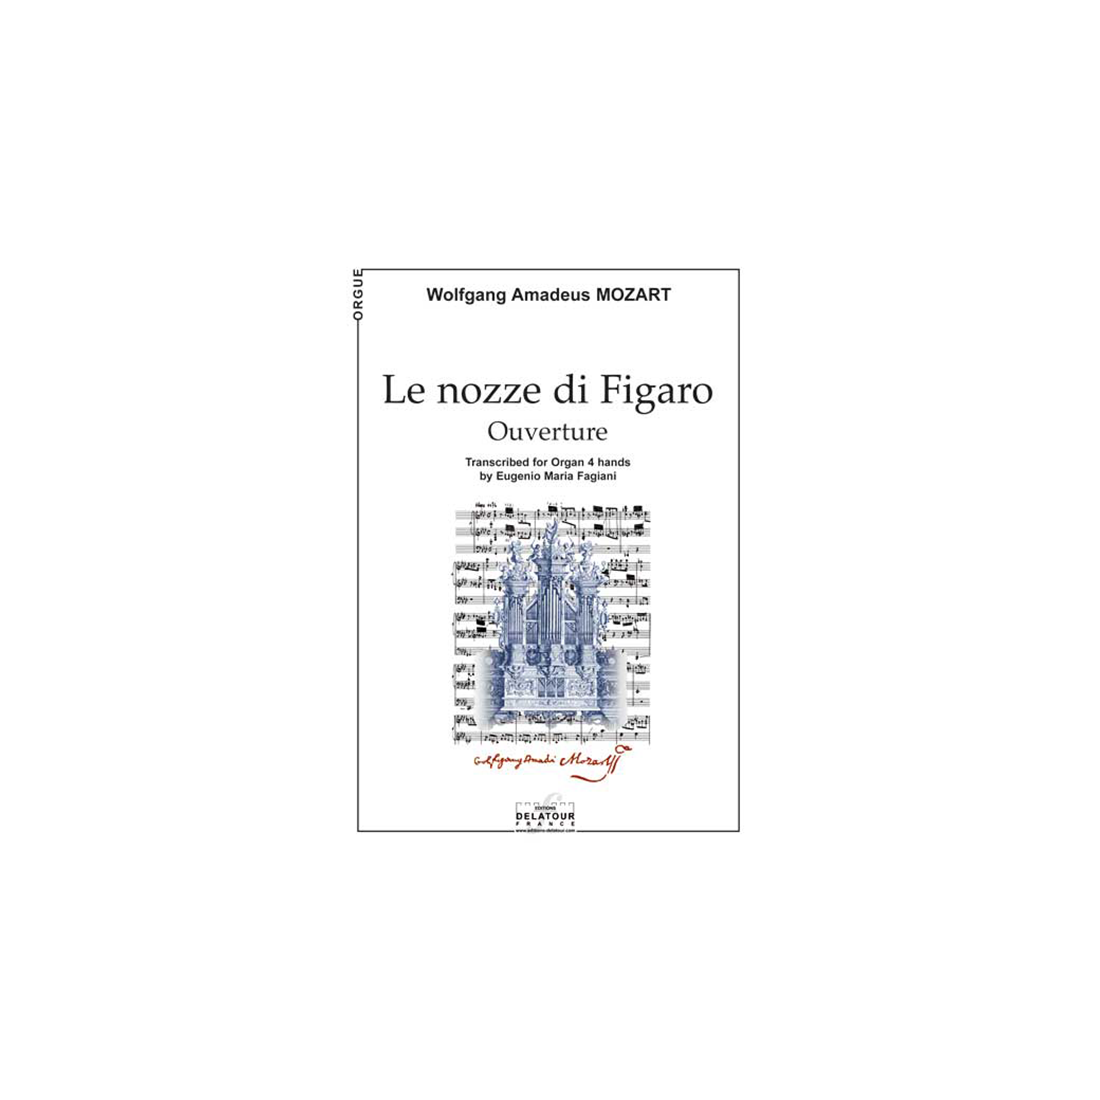 Le nozze di Figaro (Overture) for organ 4 hands